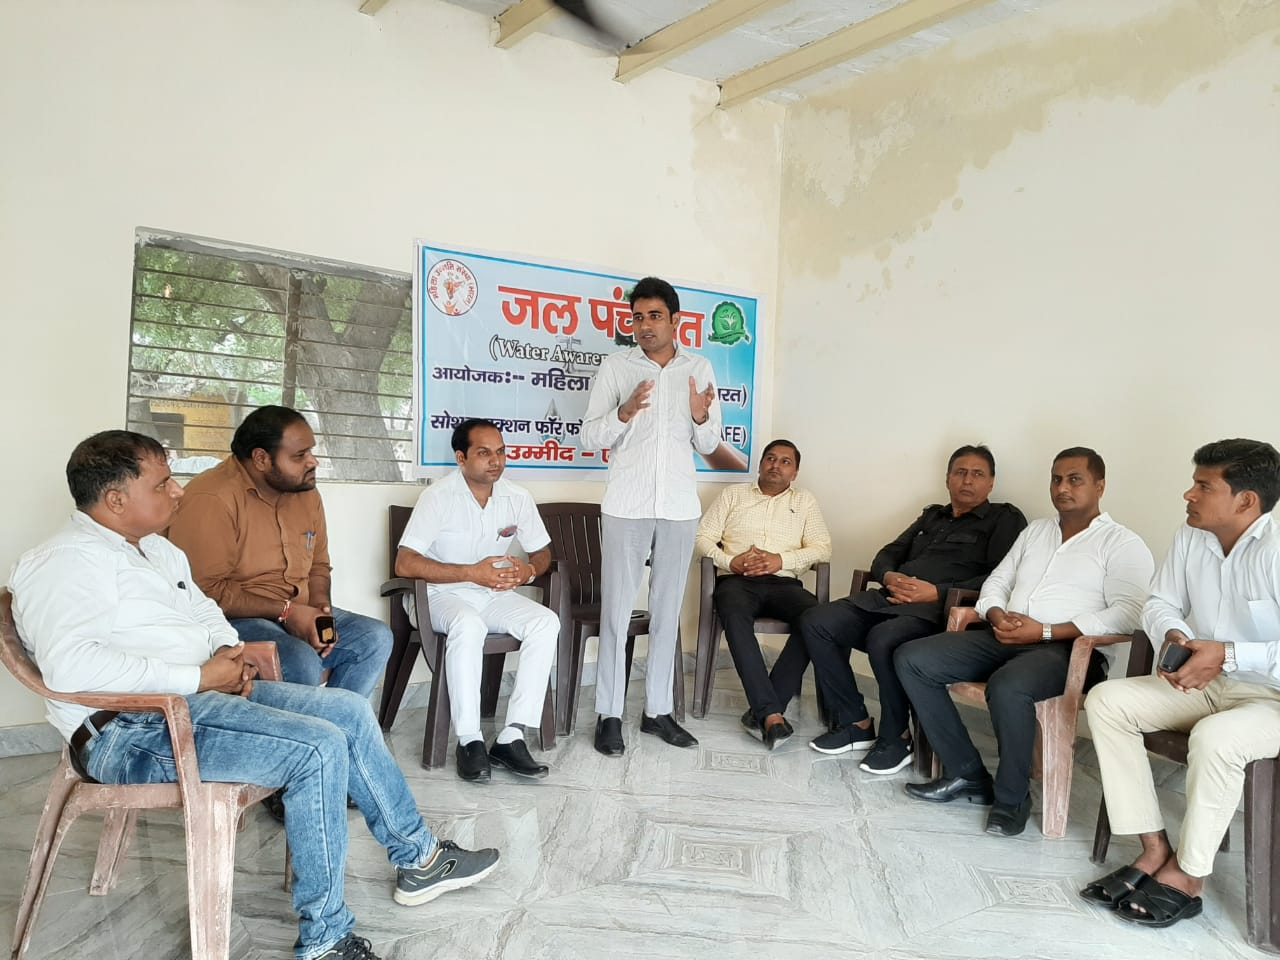 गिरधरपुर गांव की समस्याओं को लेकर करप्शन फ्री इंडिया ने की बैठक